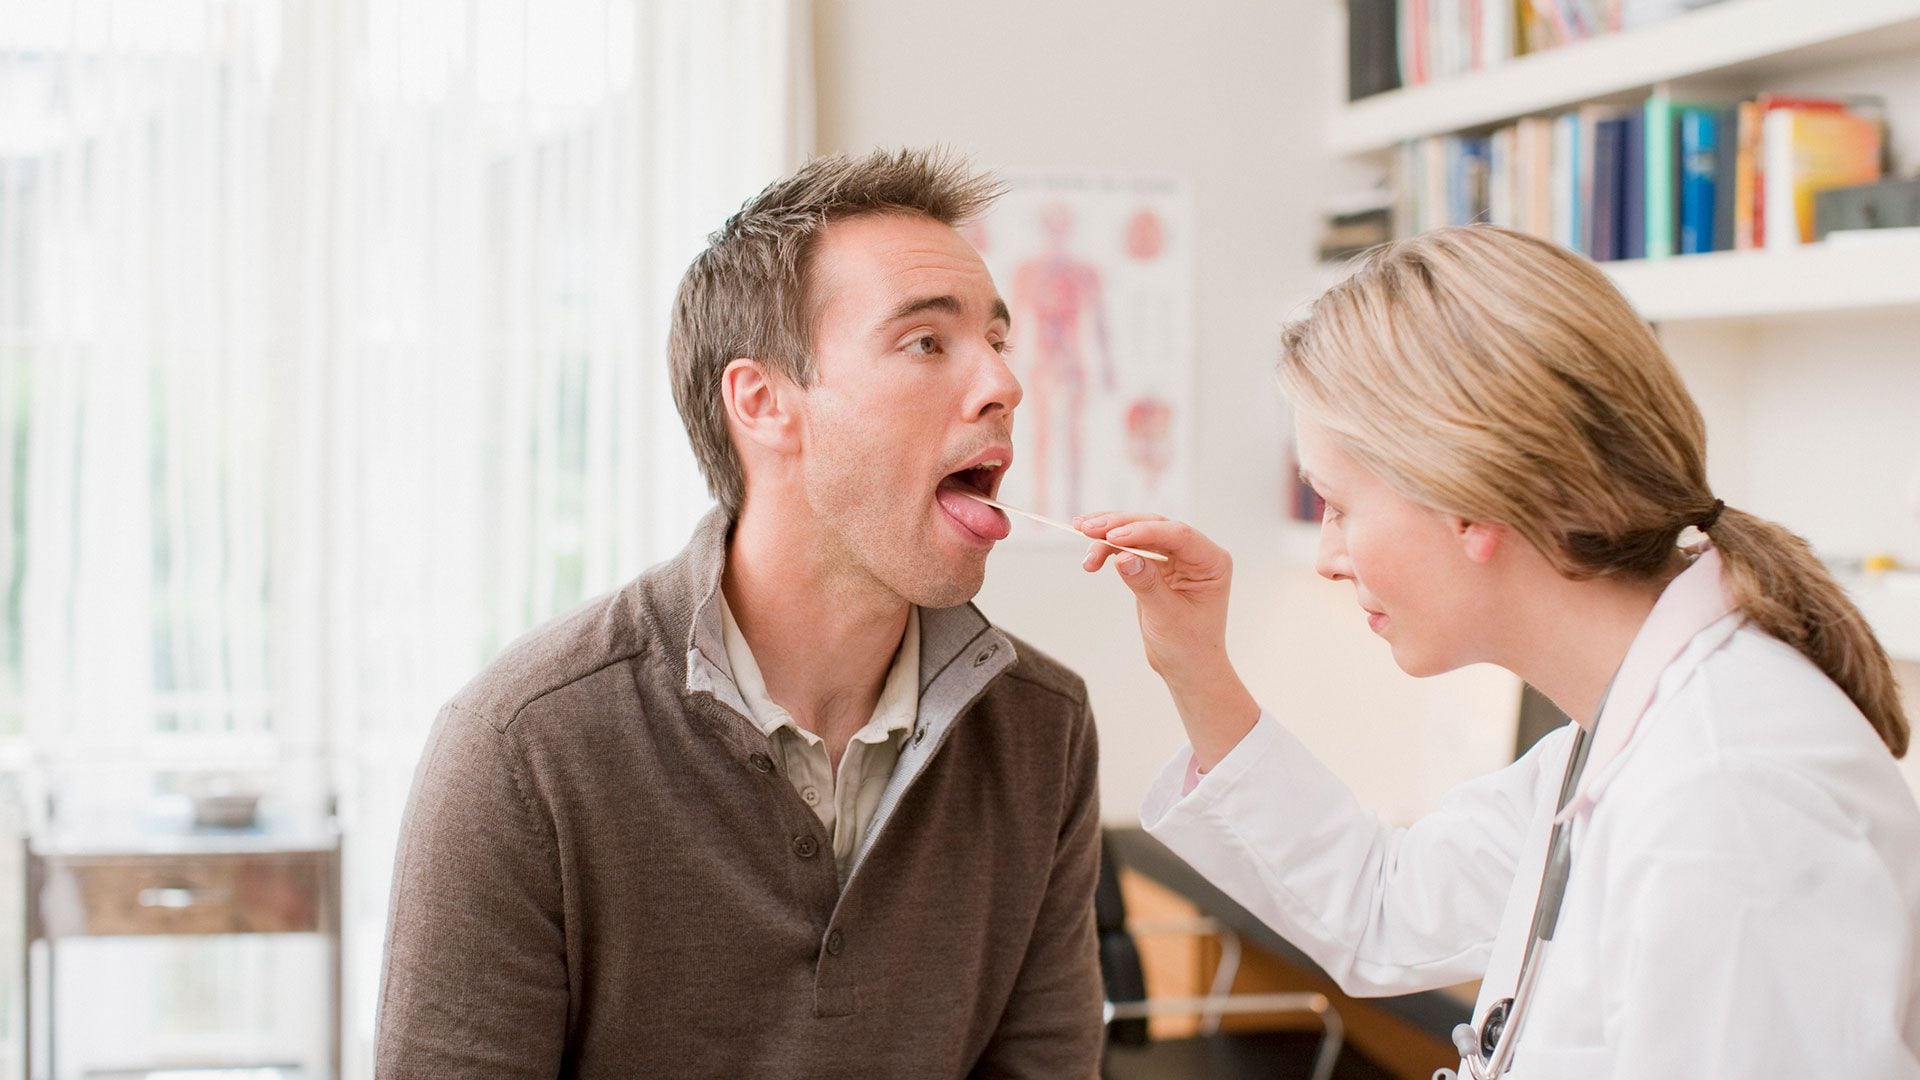 La primera instancia de consulta ante el ardor de lengua es el médico clínico (Christin Klose Gettyimages)